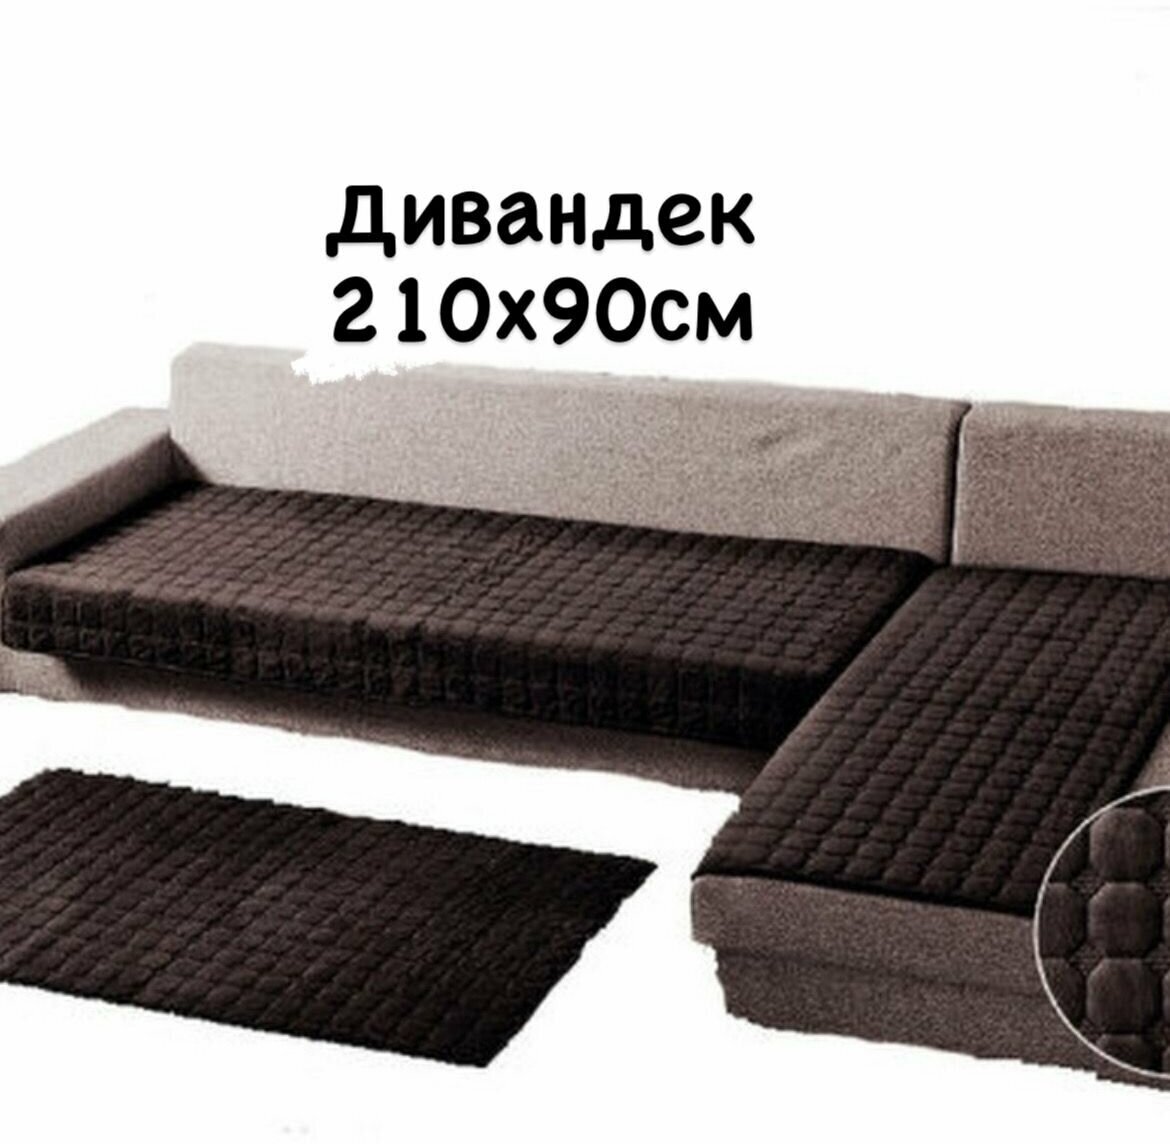 Накидка на диван дивандеки на угловой диван 90х210 см. - 1 шт покрывало на диван